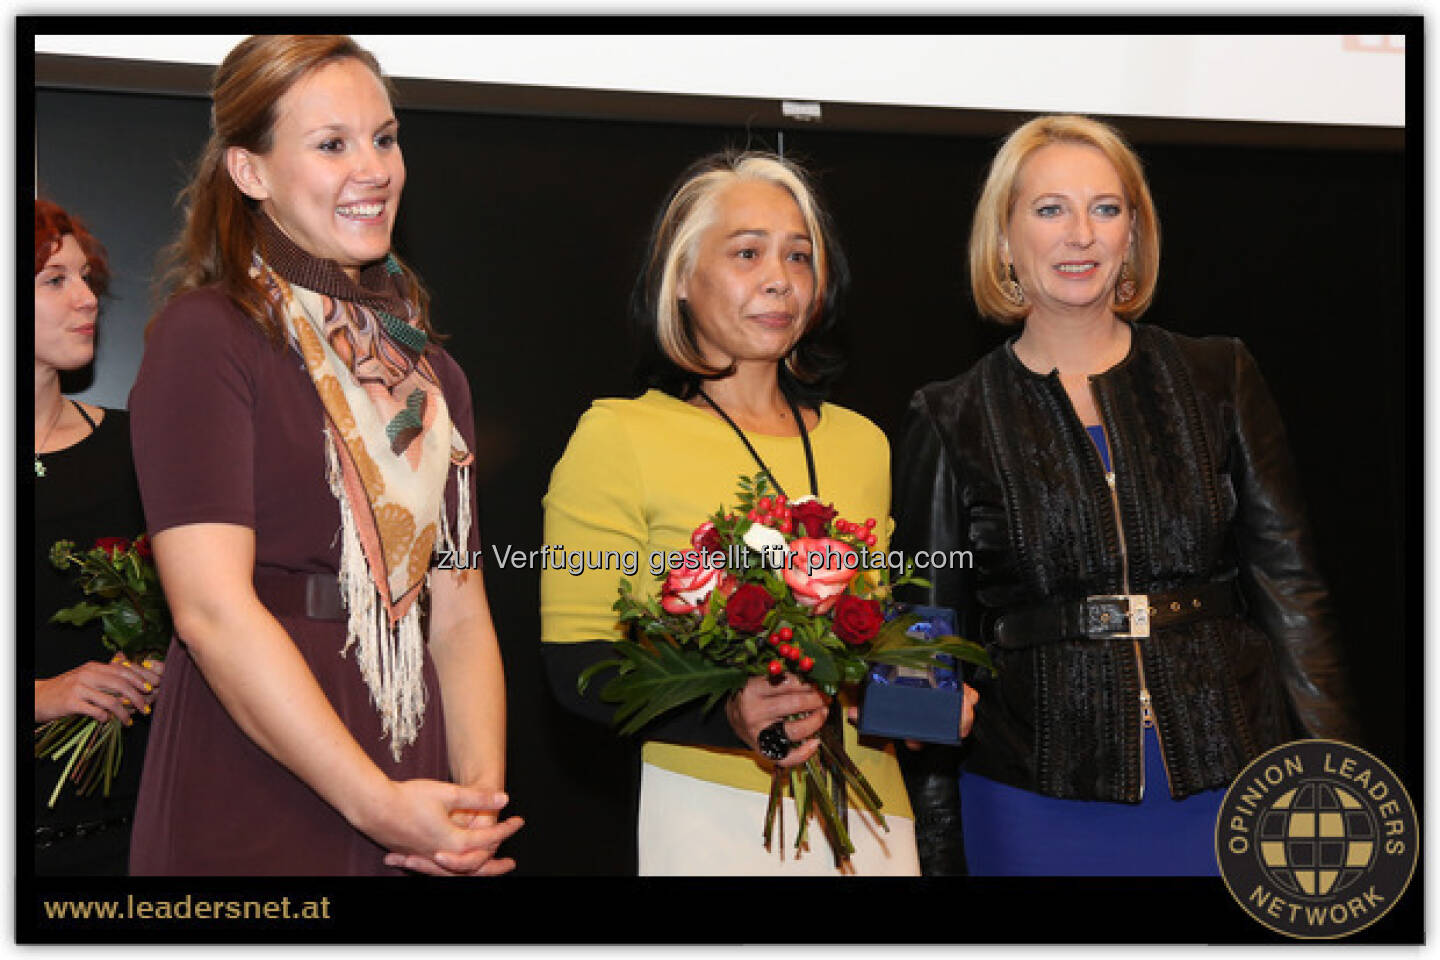 Yvonne Werginz, wohnfee.at: Beim Woman Award 2012 in der Kategorie „Wir hatten eine kreative Geschäftsidee“ gewonnen. Die Verleihung fand am 20. November mit Schirmherrin Doris Bures statt